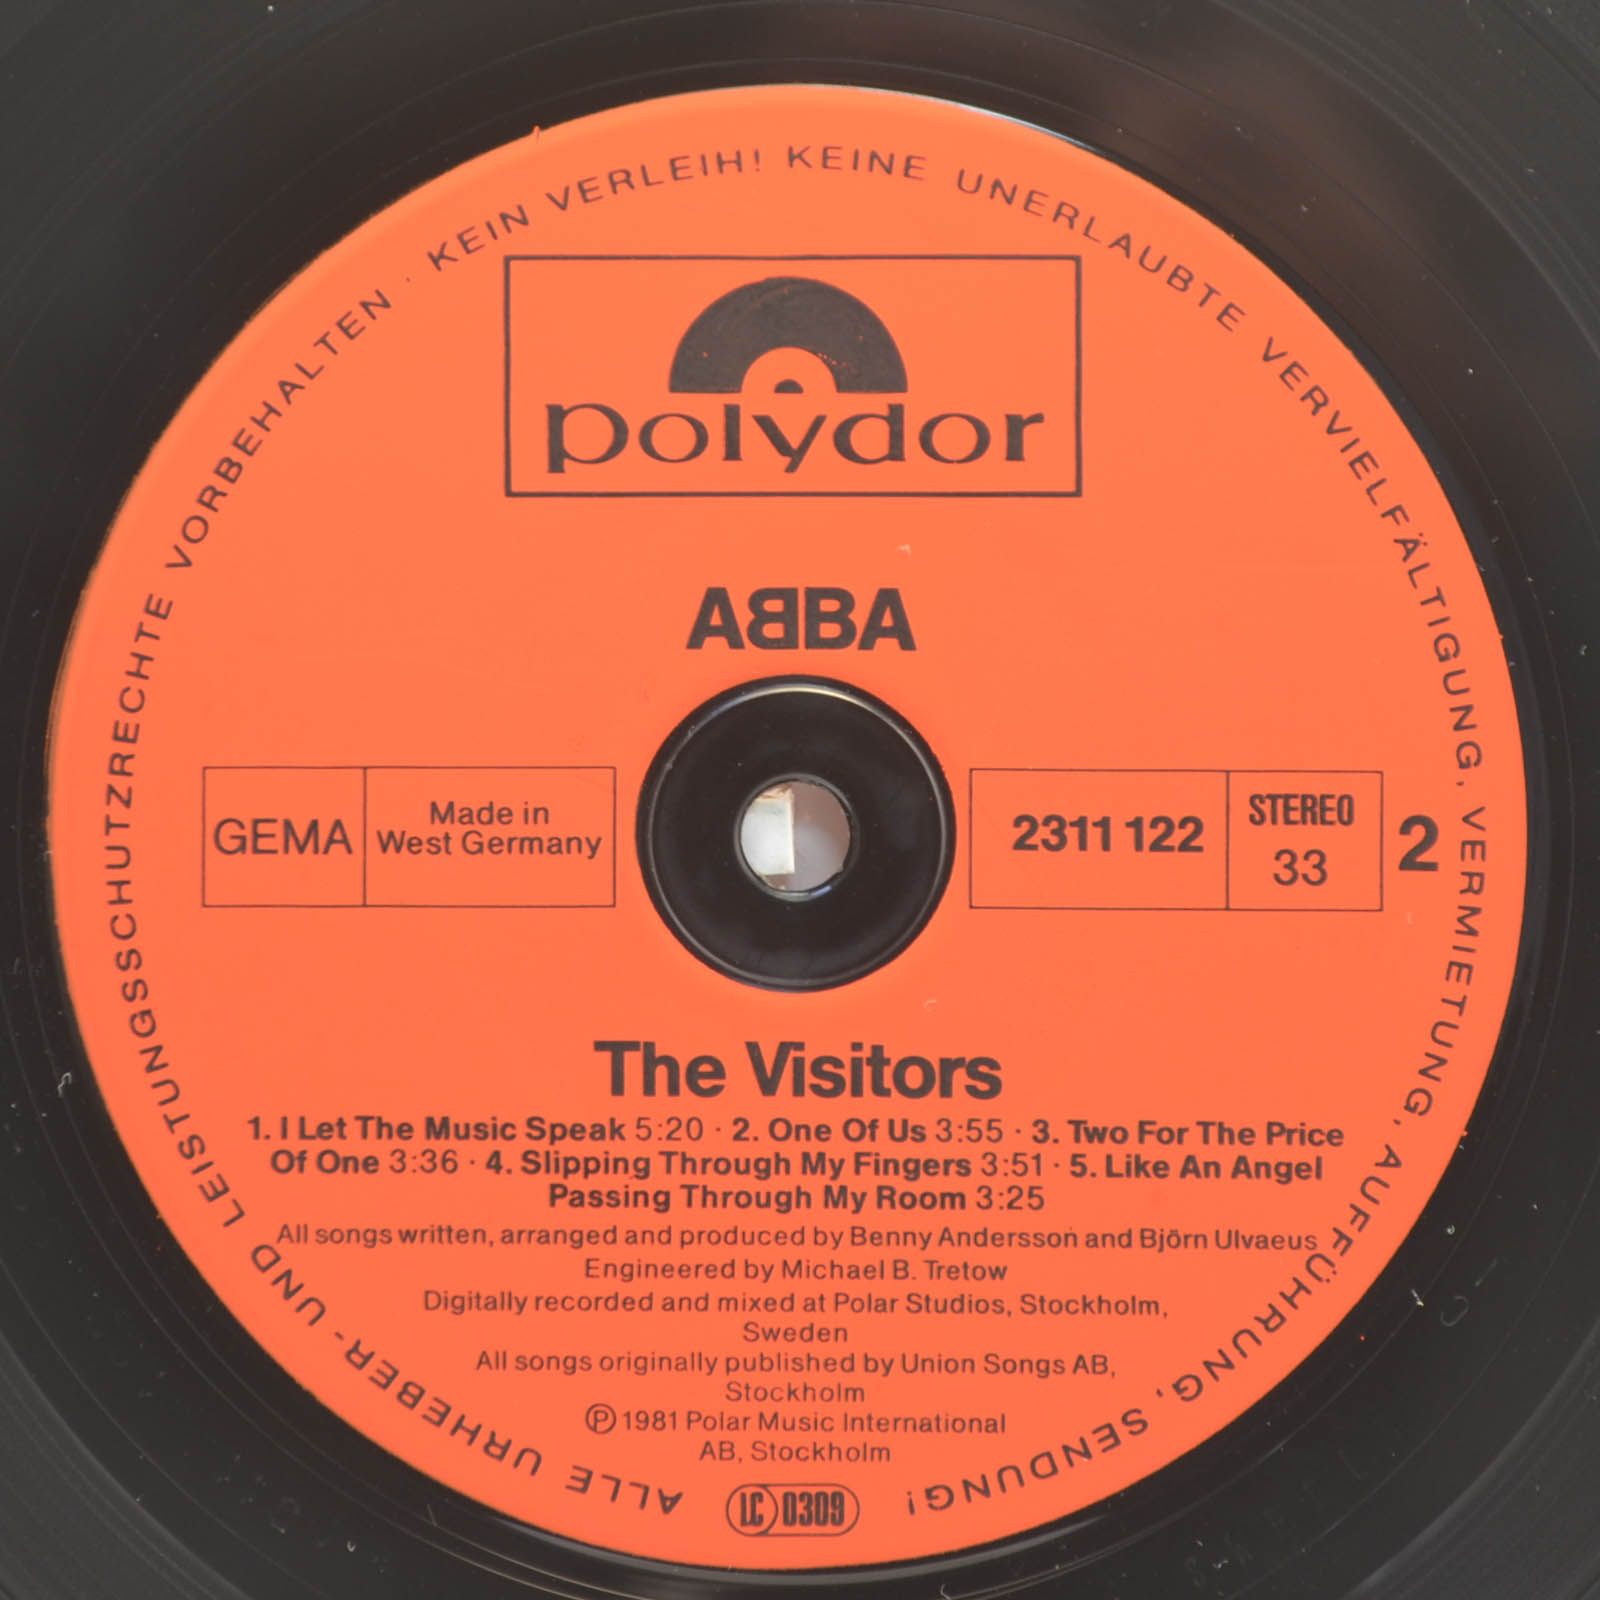 ABBA — The Visitors, 1981